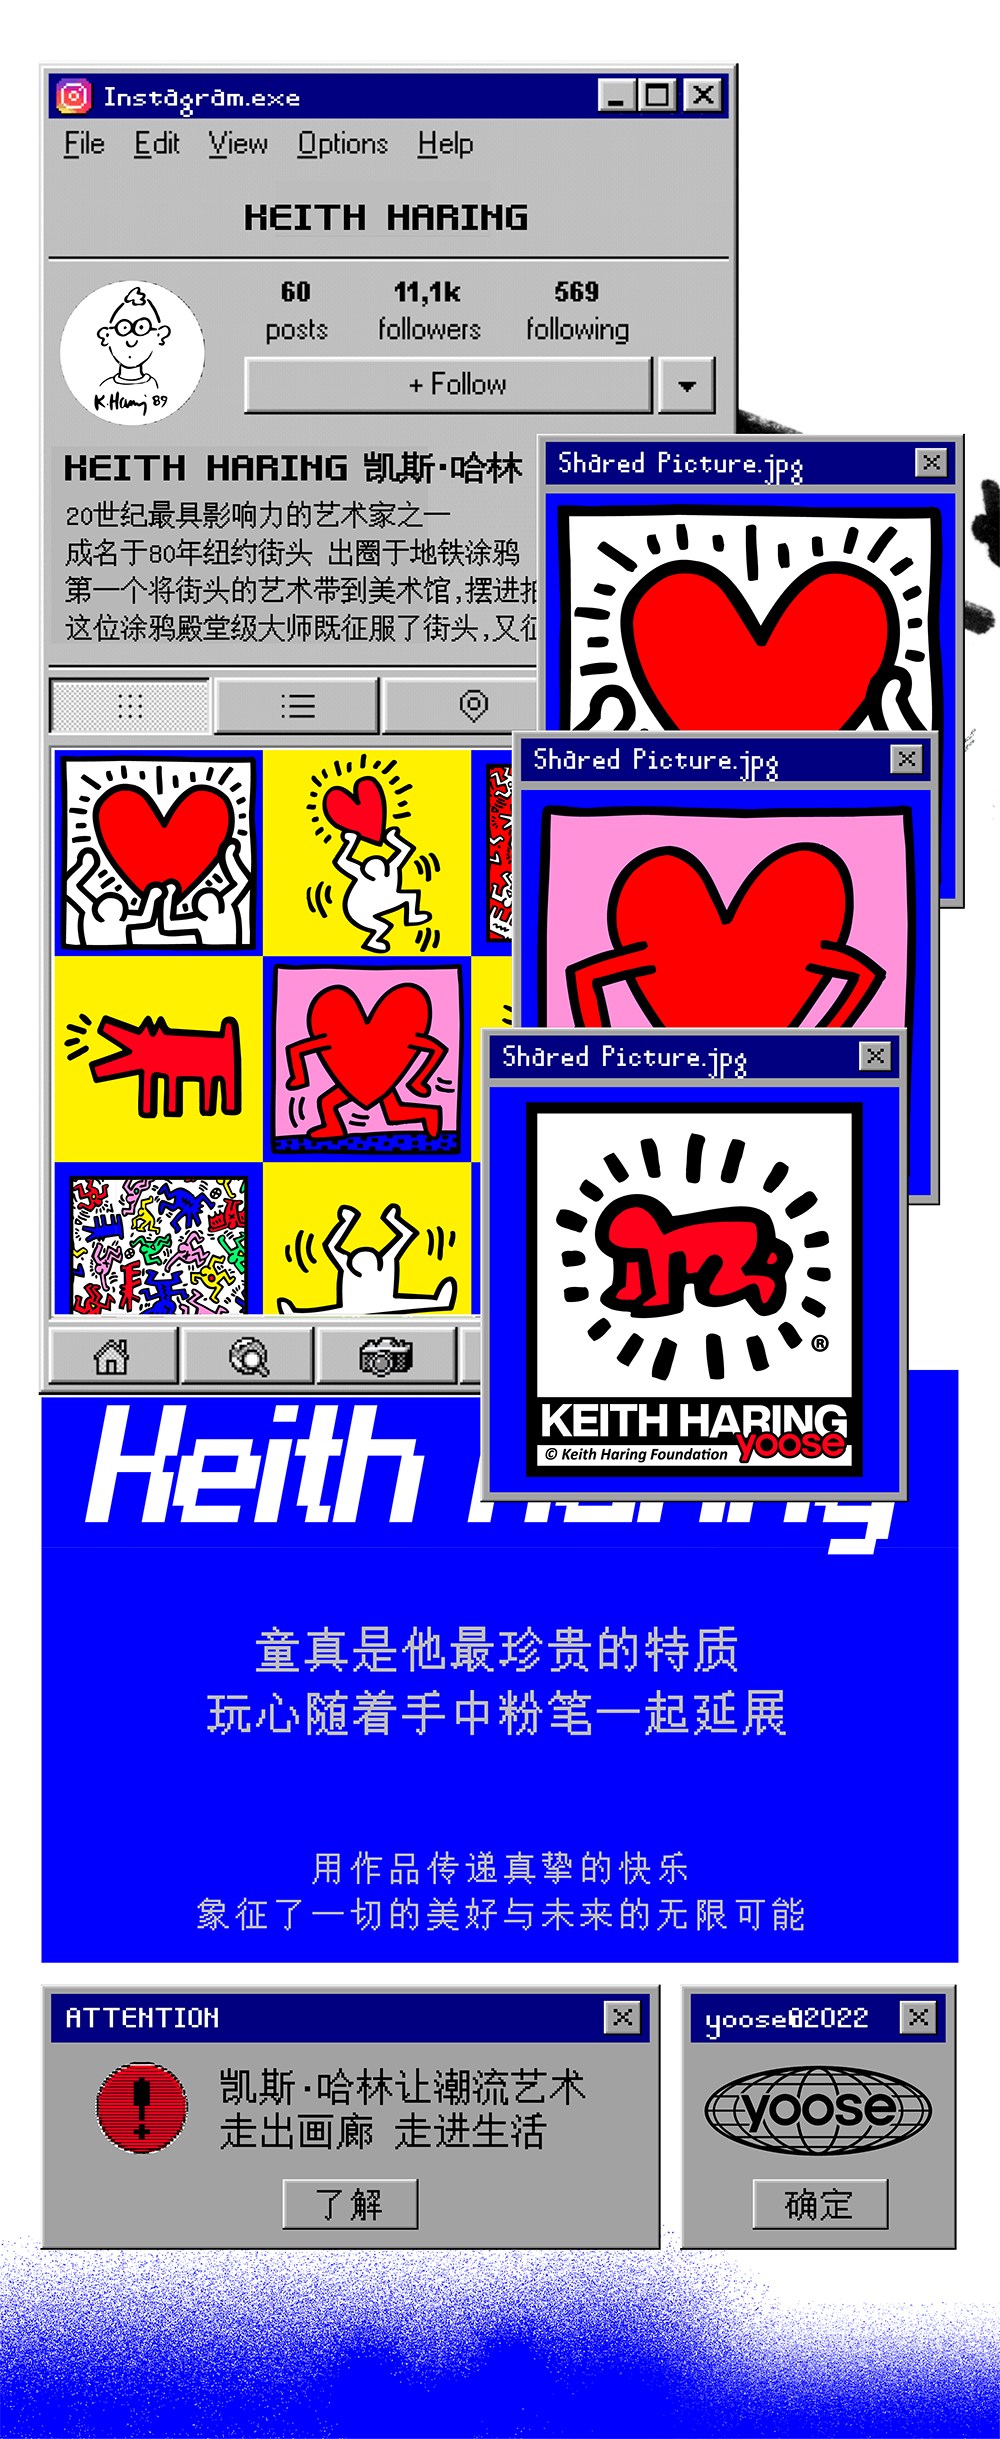 yoose® x Keith Haring ™艺术家联名礼盒